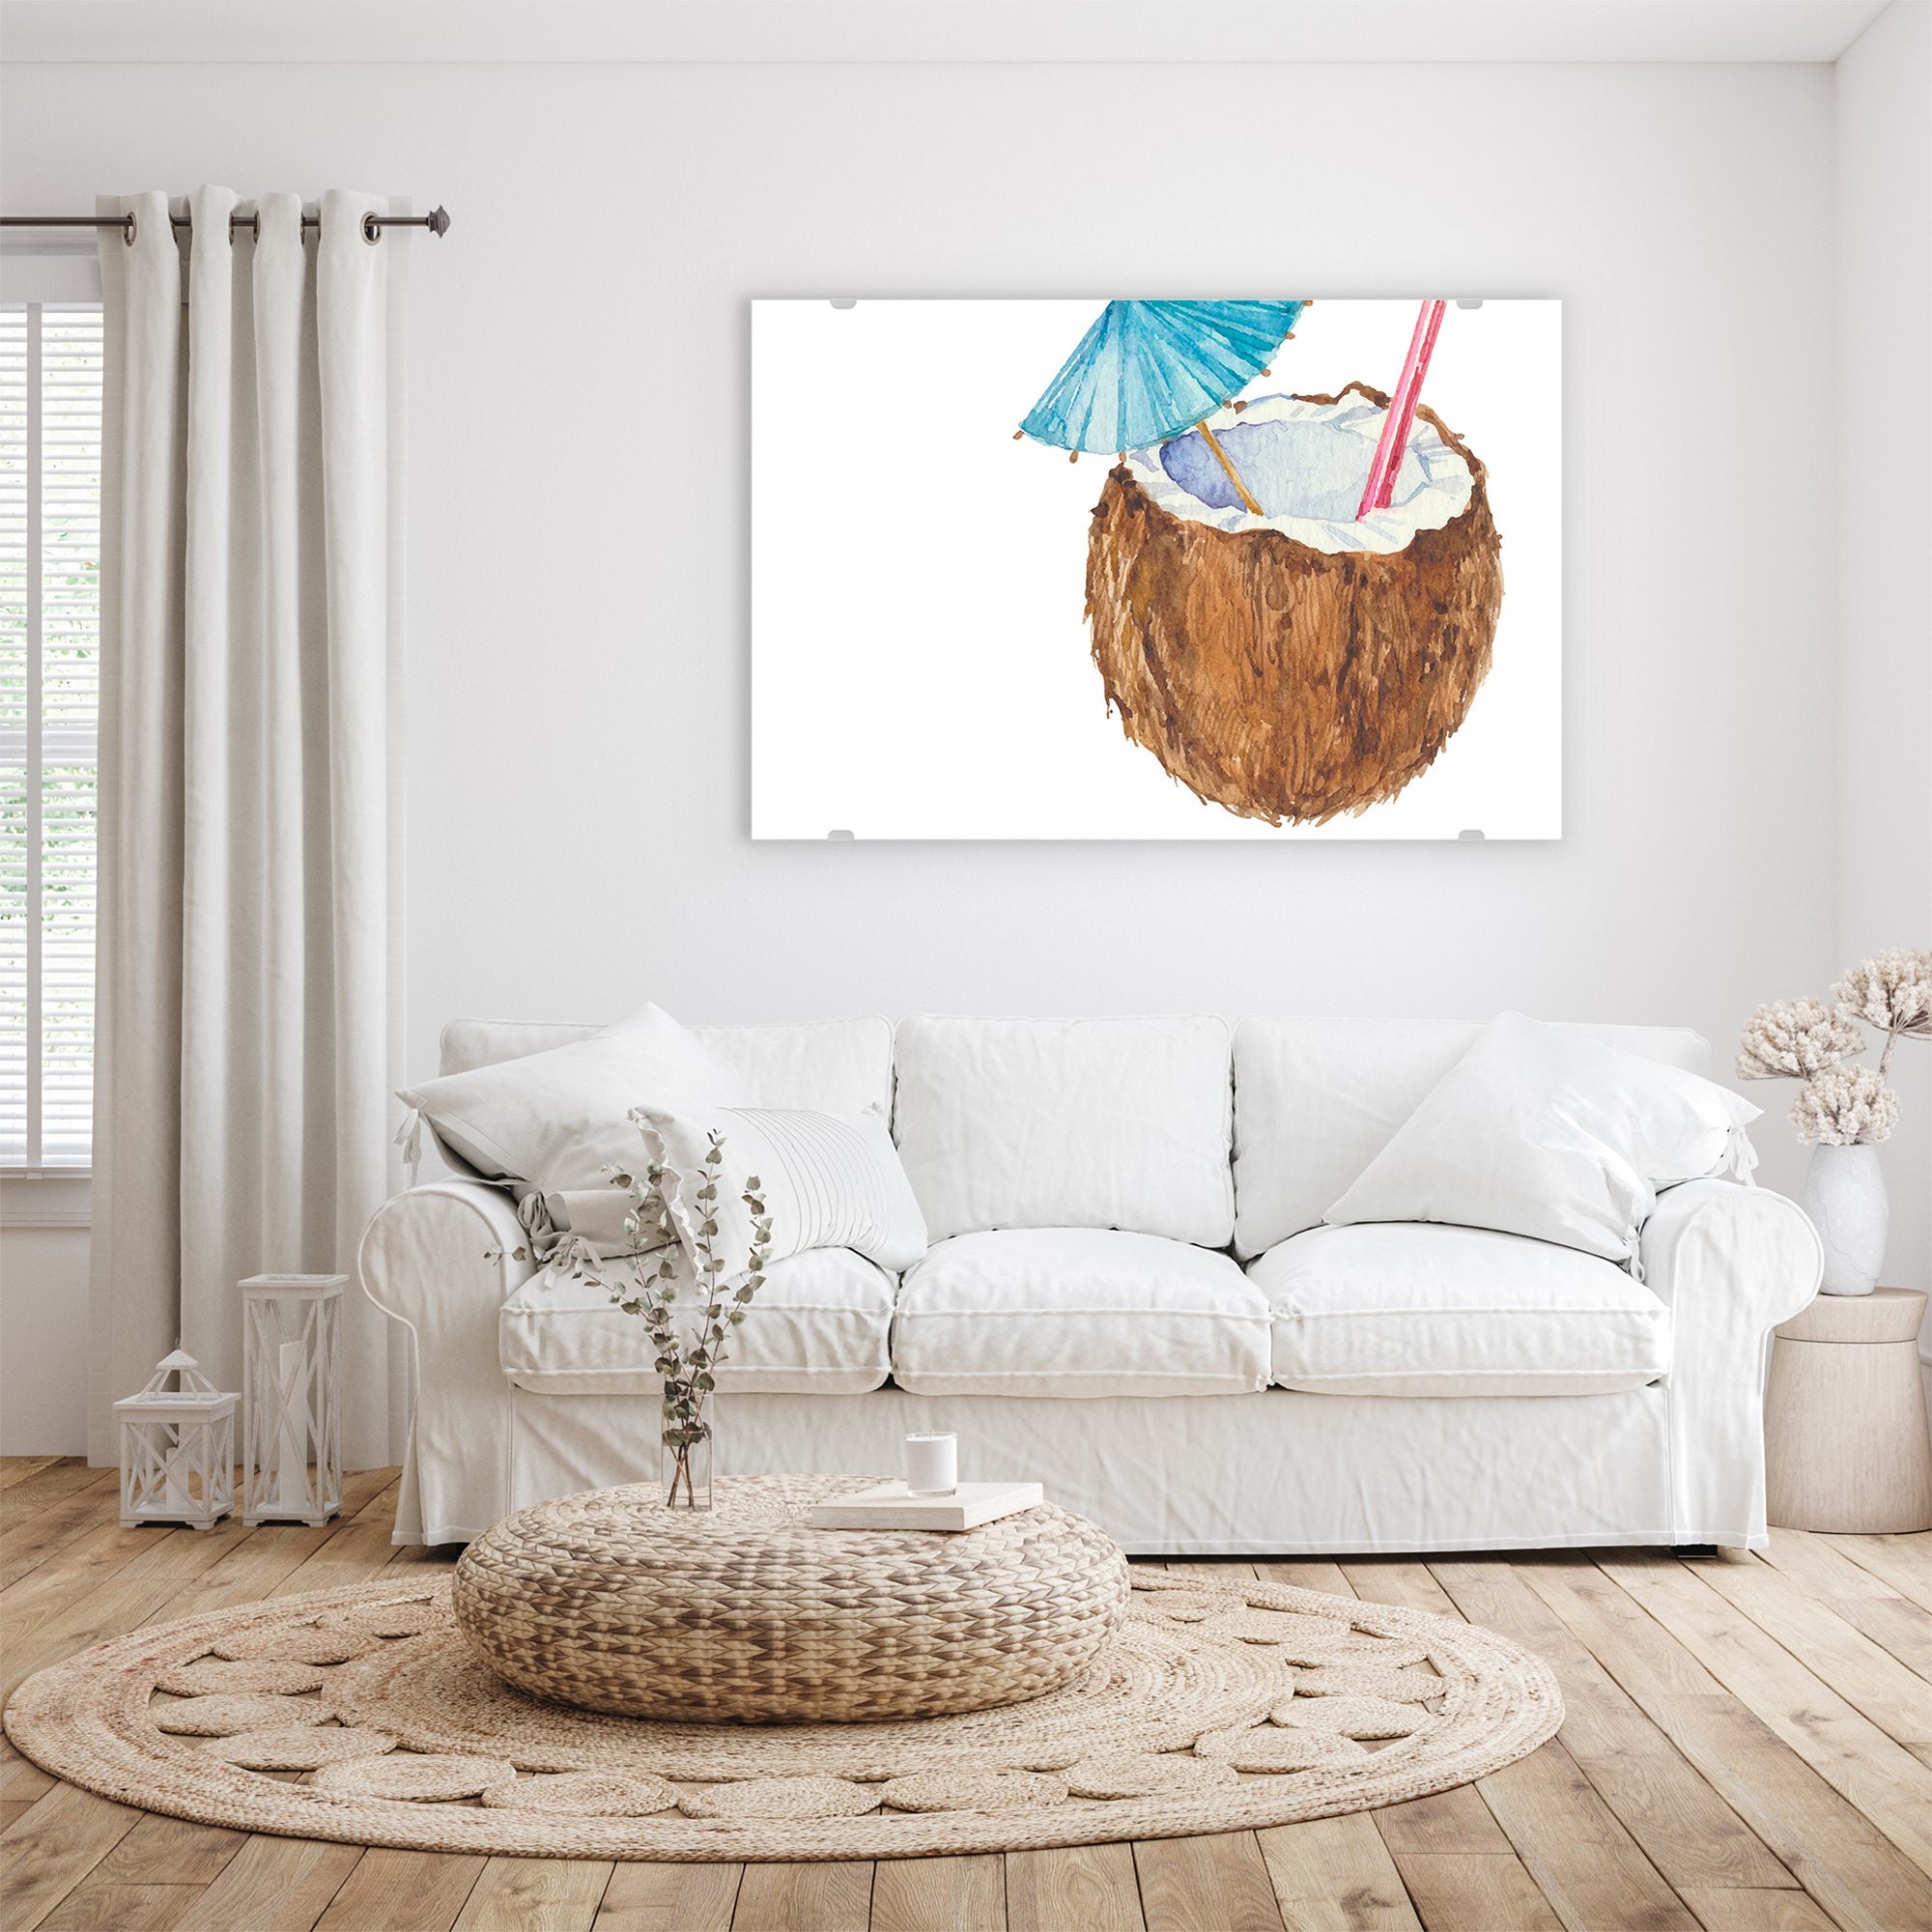 Wandbild - Kokosnuss mit Strohalm